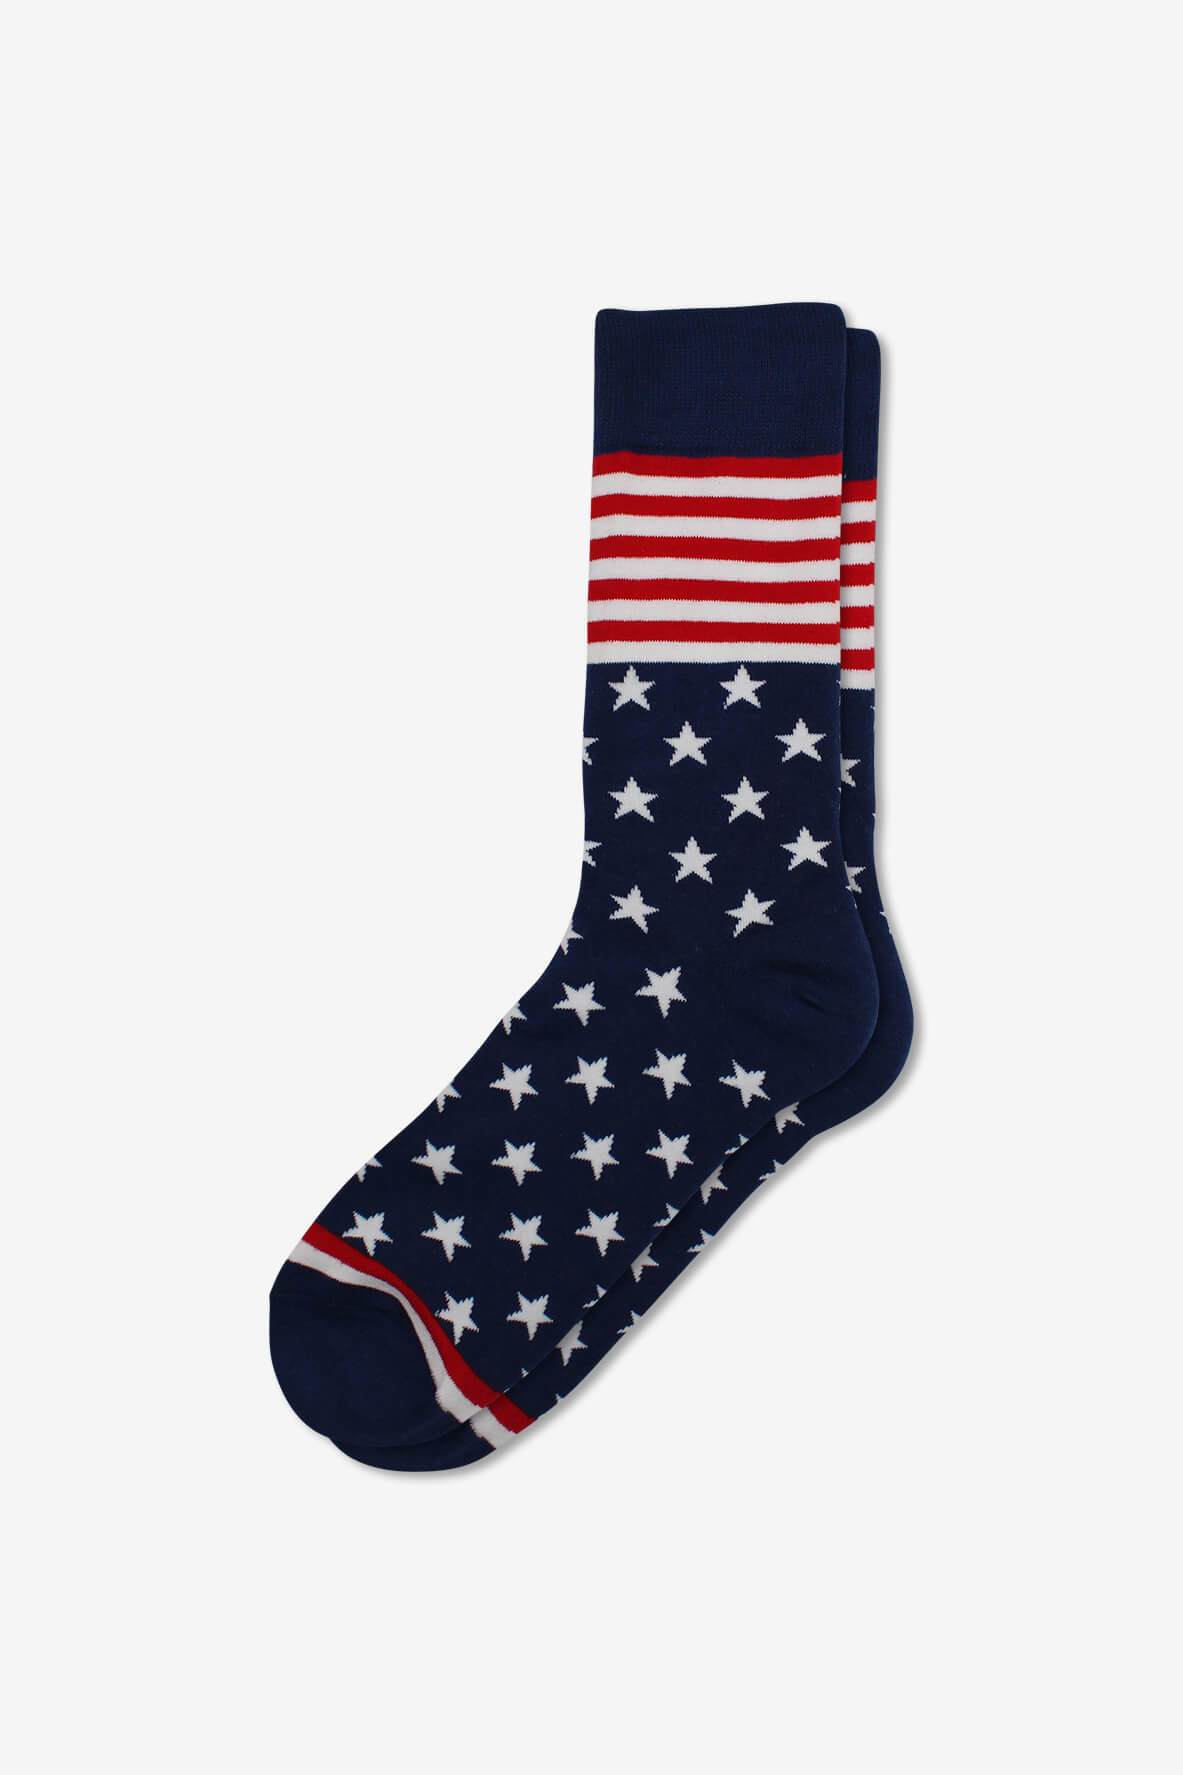 Socks IMG_5287, socks, GoTie